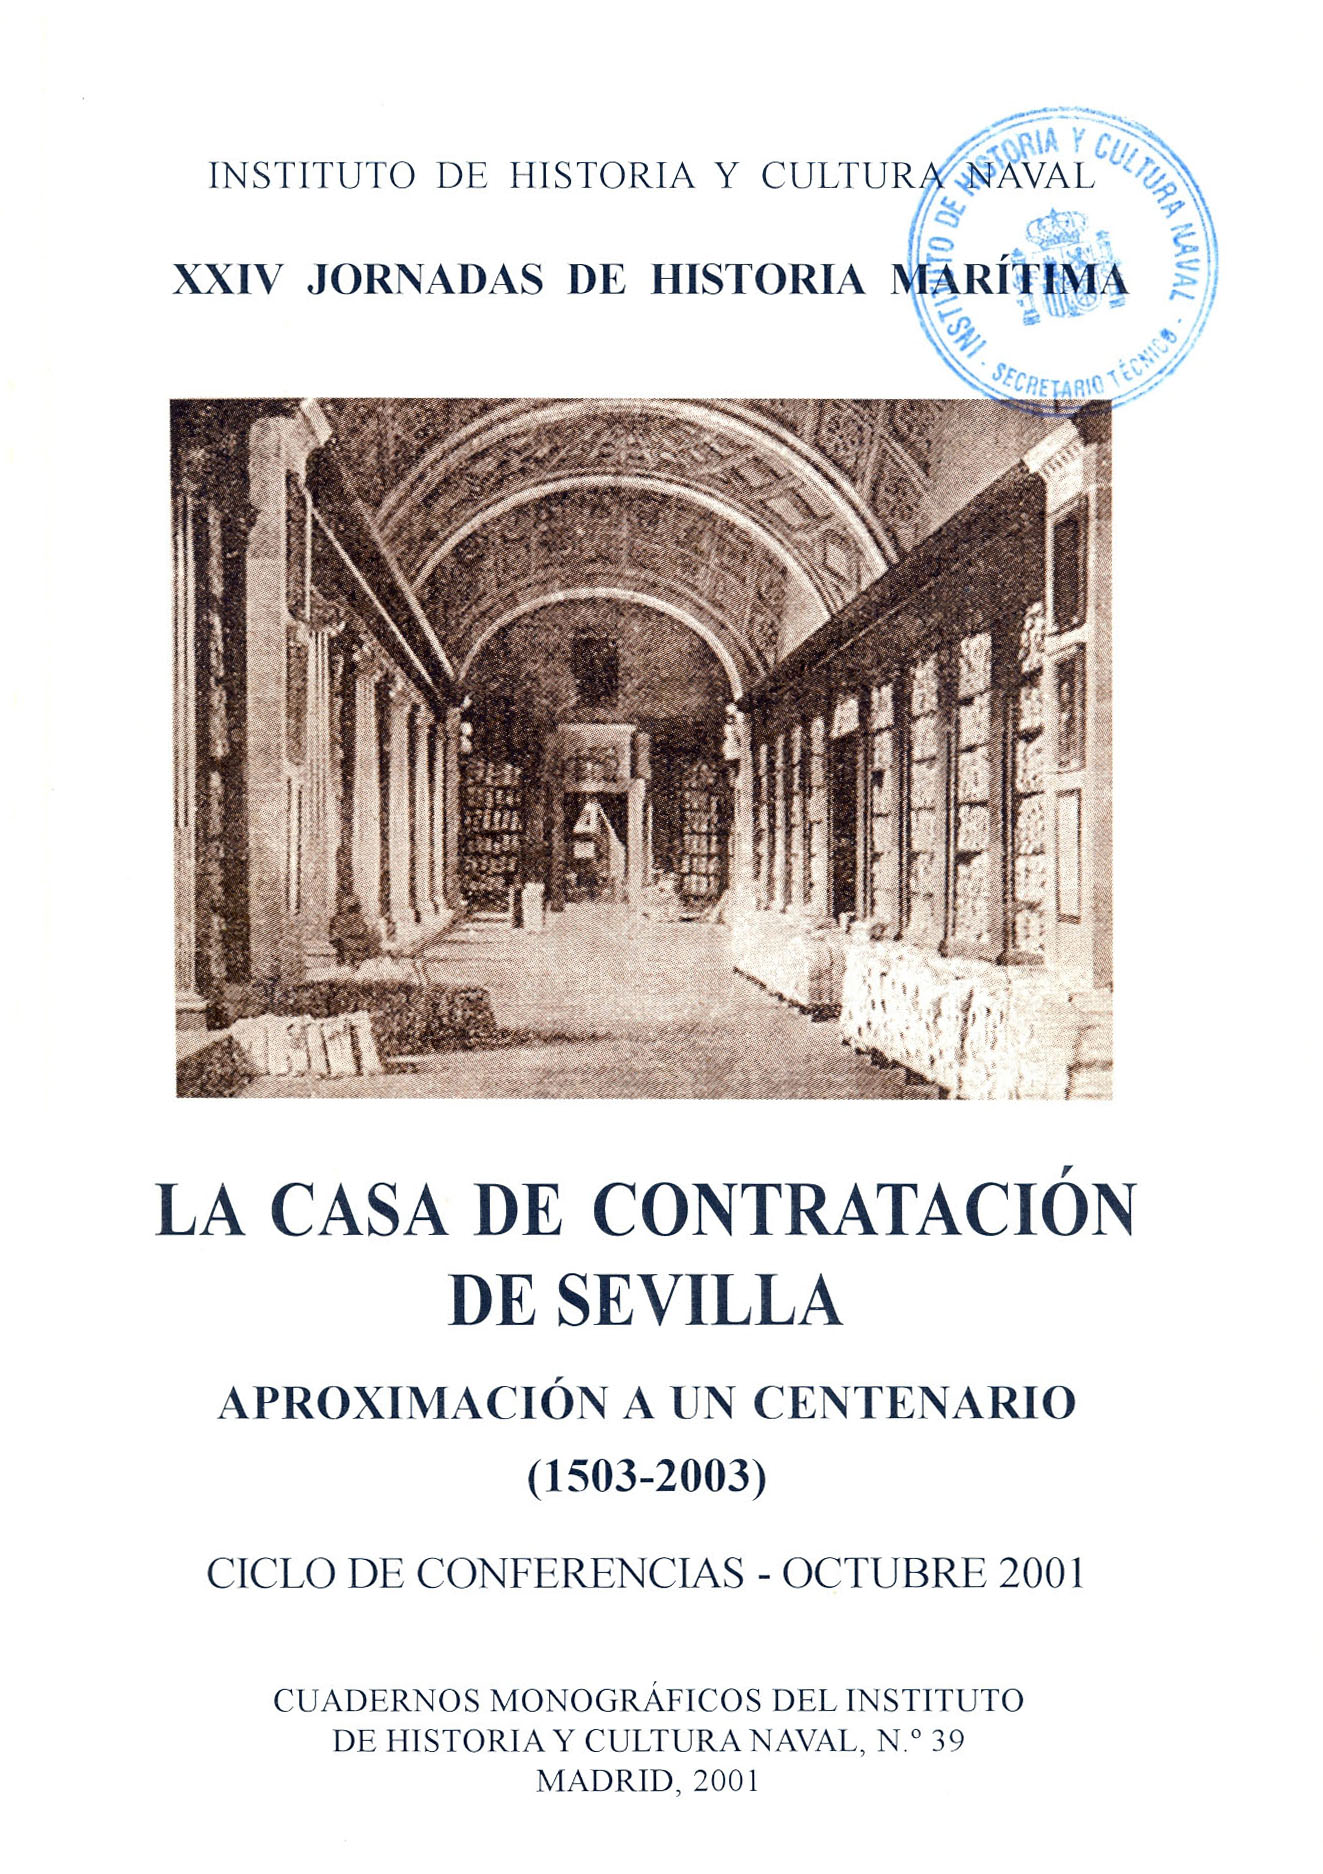 La casa de Contratación de Sevilla, aproximación a un centenario (1503-2003)